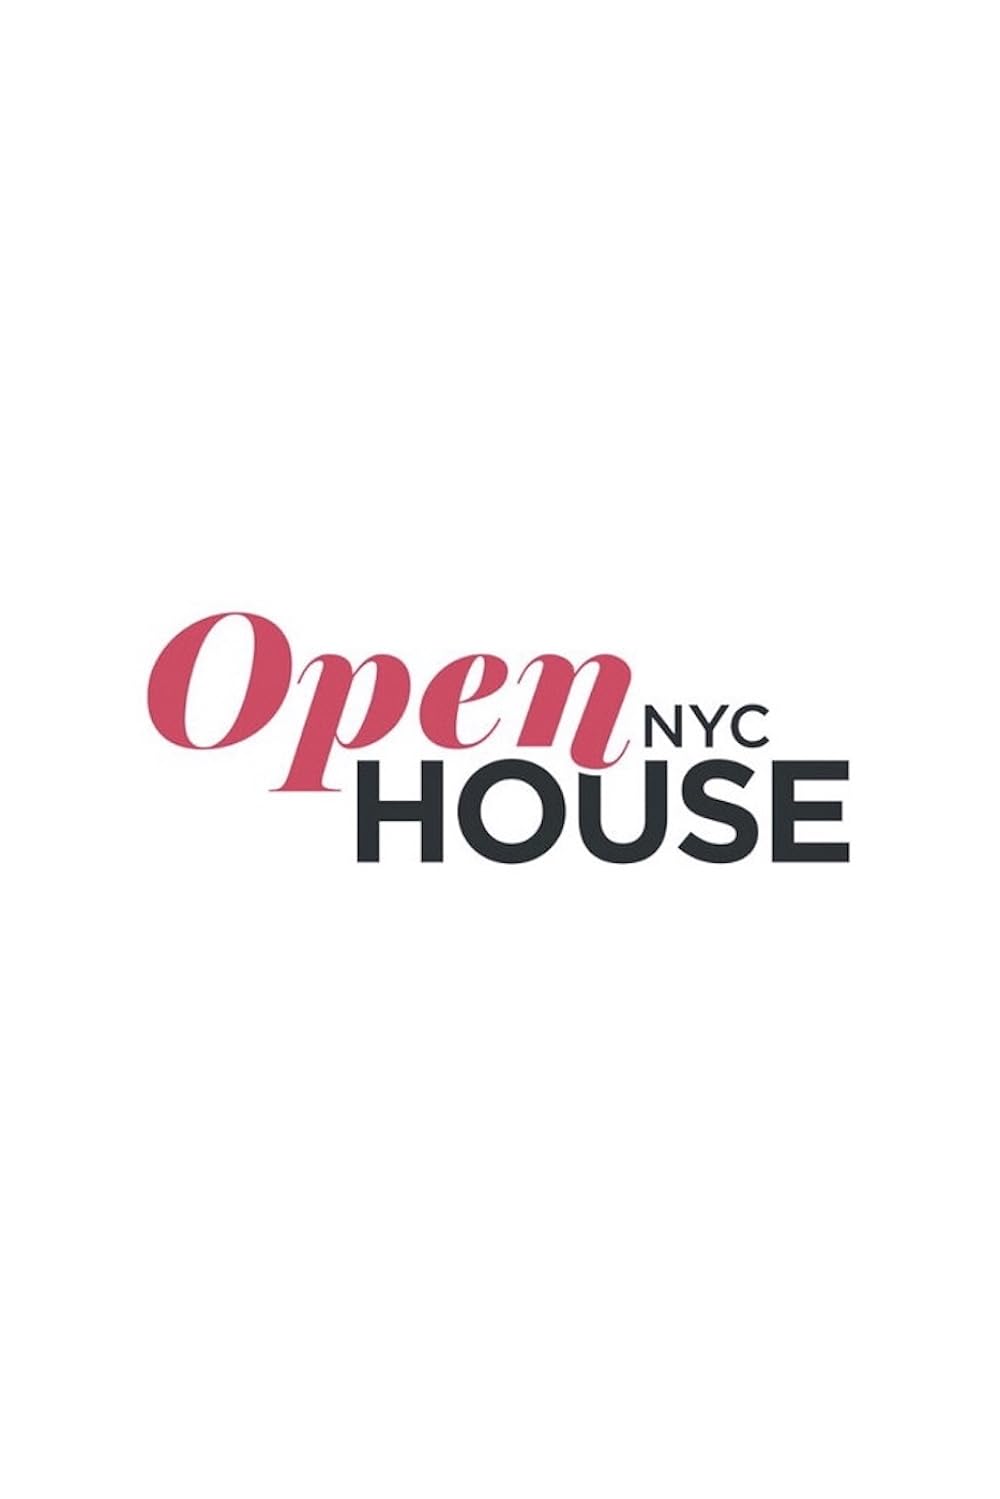 OpenHouse NYC